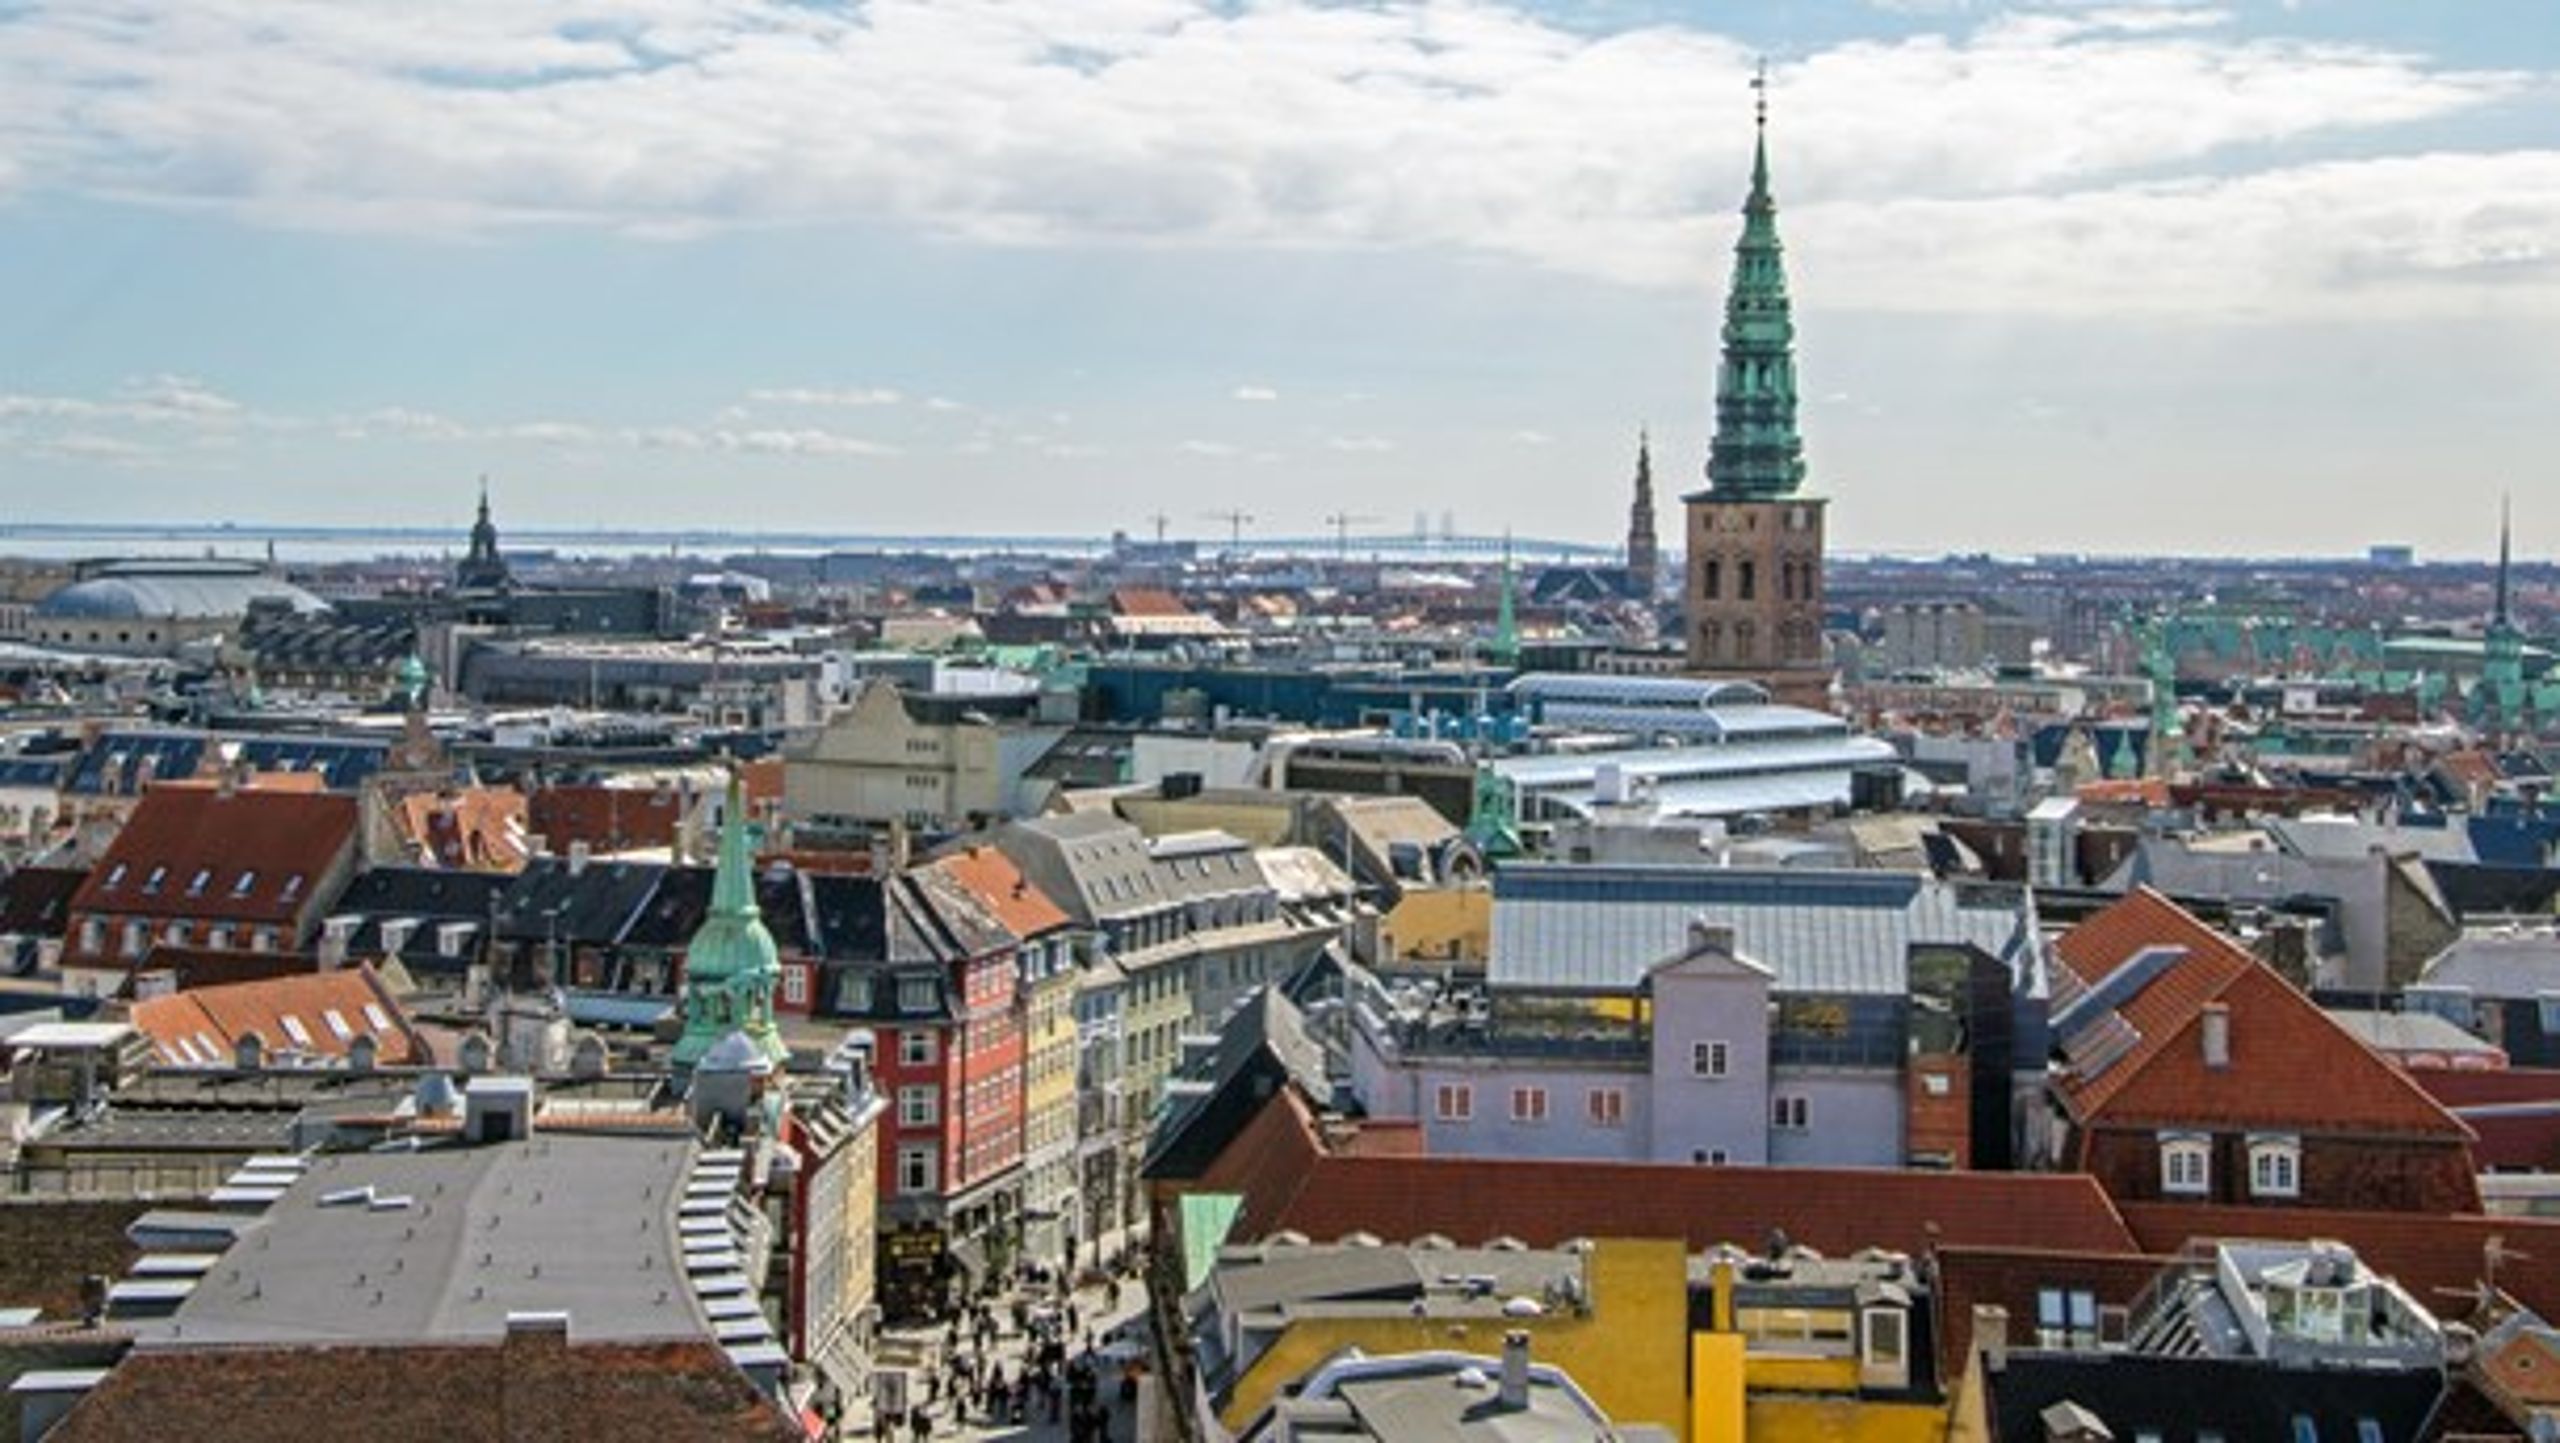 Over halvdelen af de forældrekøbte boliger ligger i København, mens der også er en stor del i Aarhus, viser en&nbsp; opgørelse fra Danmarks Statistik. <br>